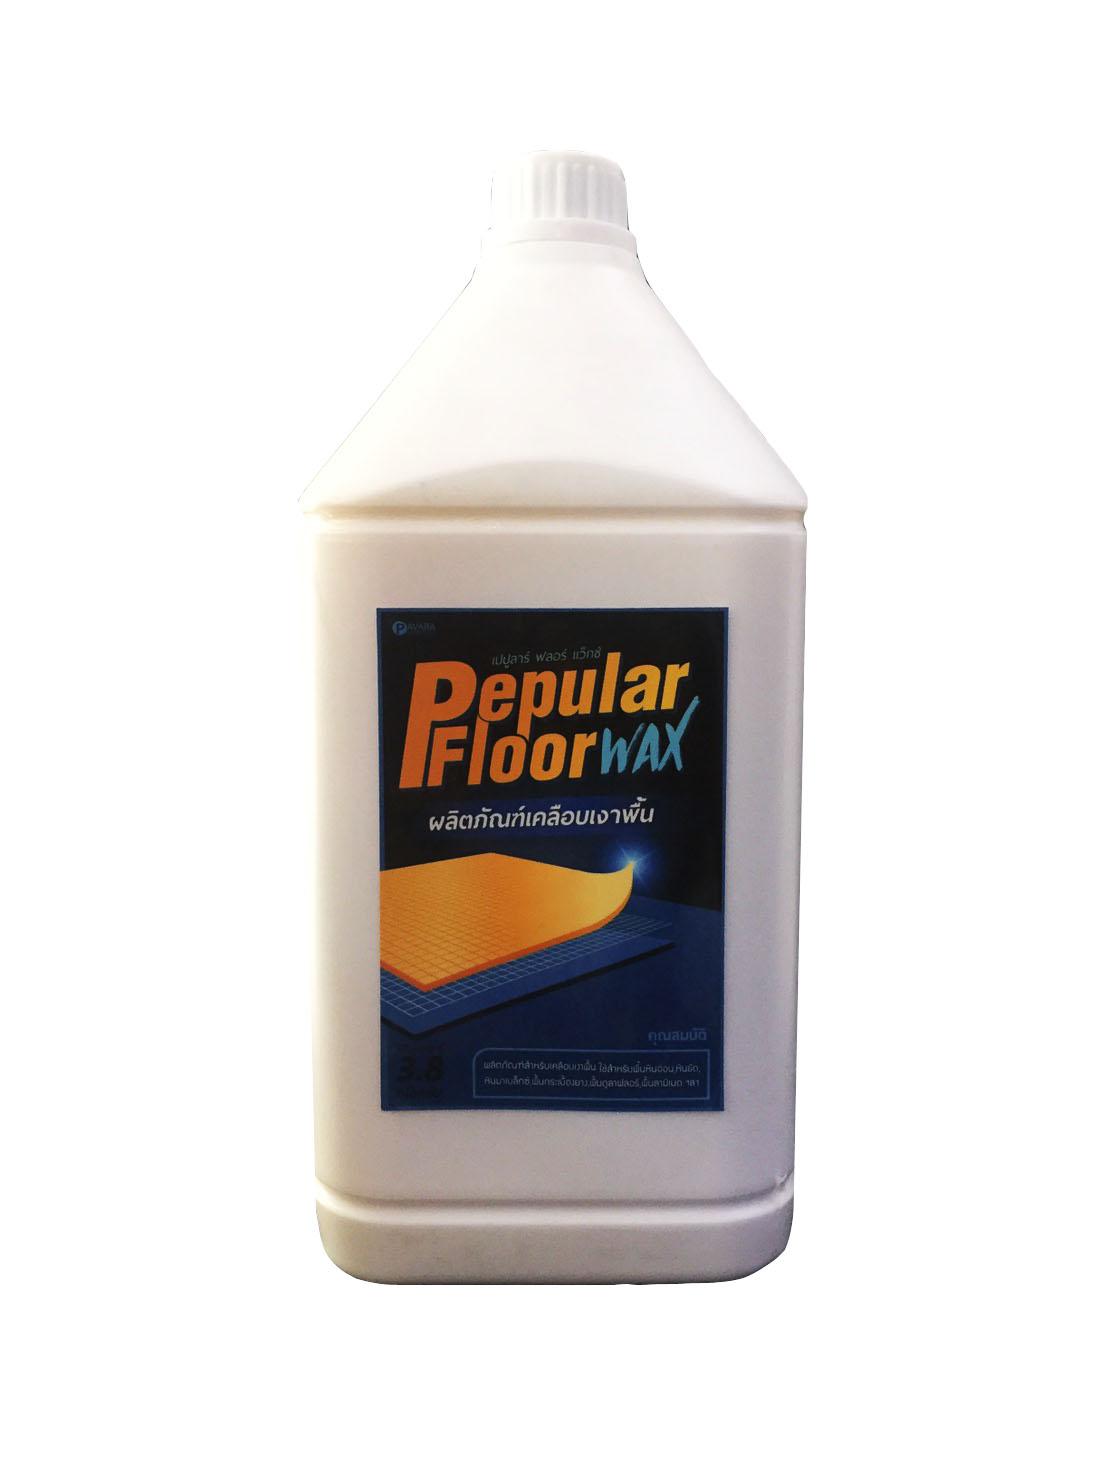 Pepular Floor Wax ผลิตภัณฑ์เคลือบเงาพื้น แว๊กซ์พื้น เกรด A ขนาด 3.8 กก. ฟรีค่าจัดส่ง